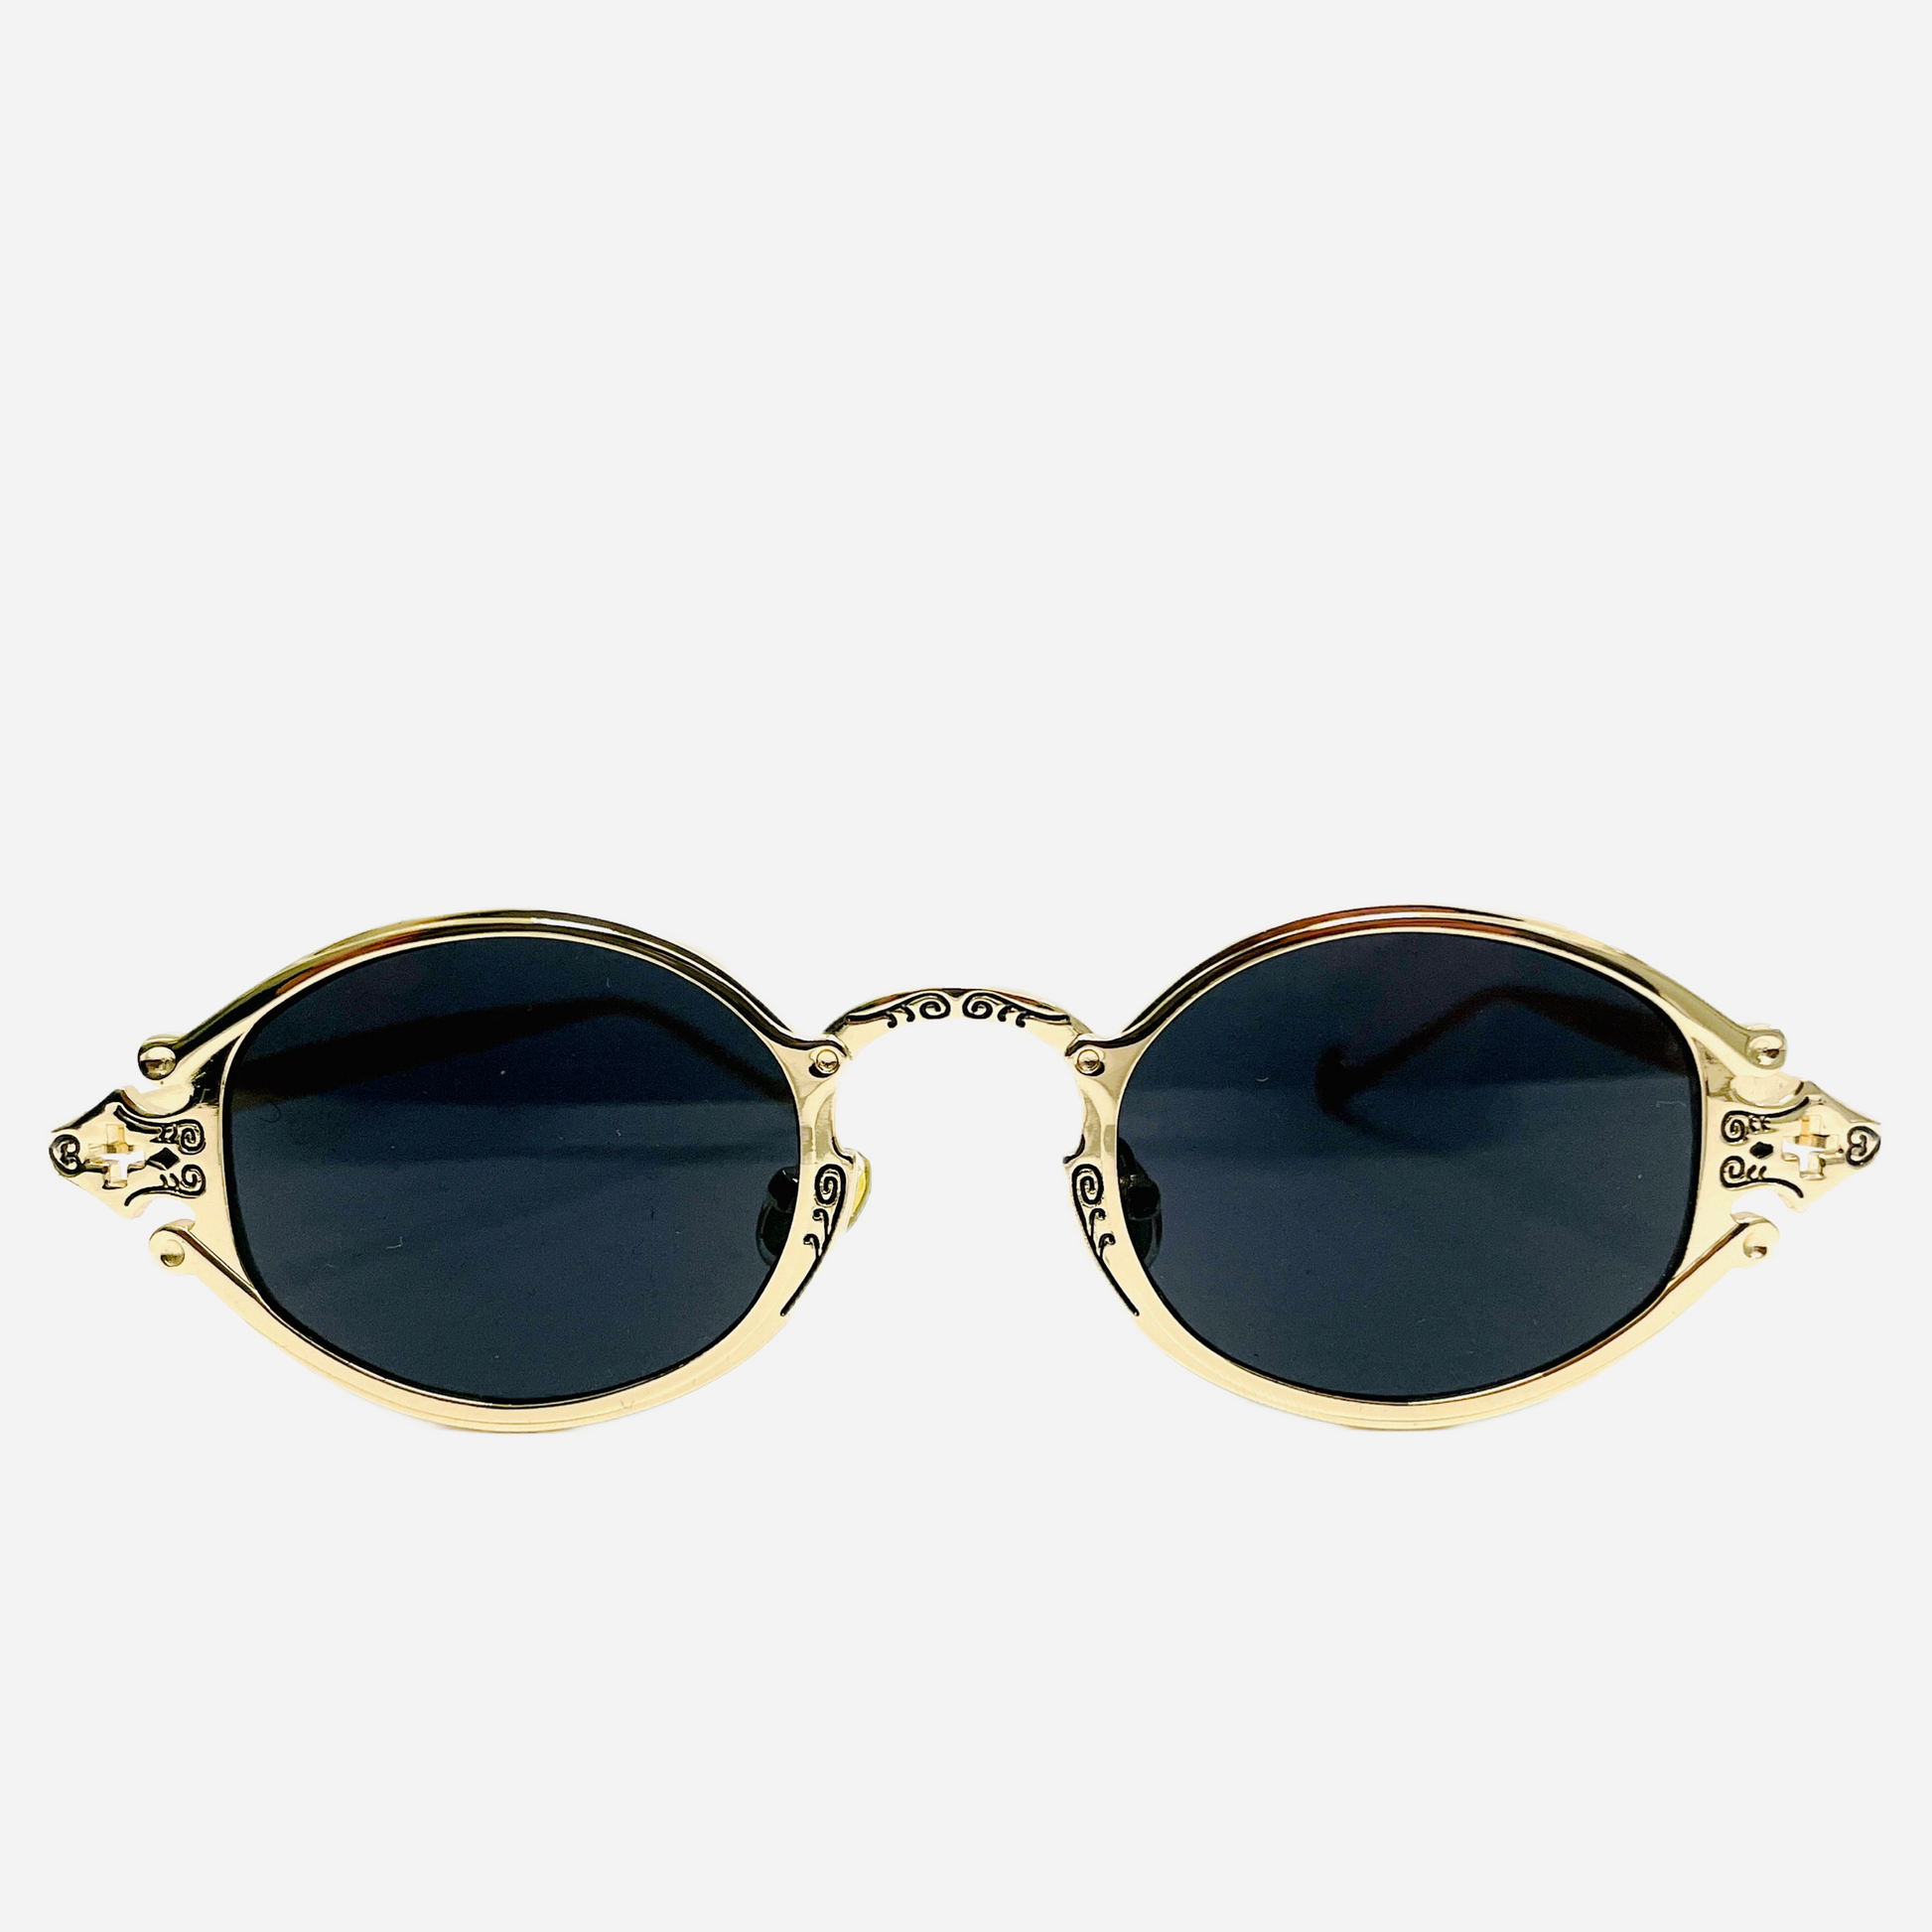 Vintage-Jean-Paul-Gaultier-Sonnenbrille-Sunglasses-Model-56-0001-gold